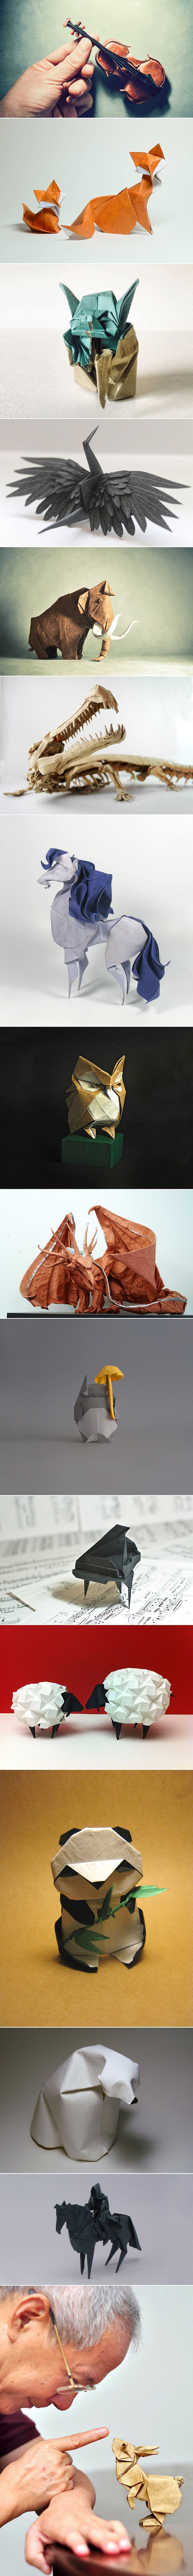 GALERIJA: Fantastična remek-djela za Dan origamija iz Japana!